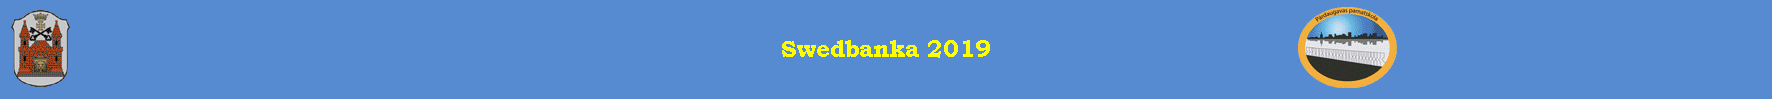 Swedbanka 2019